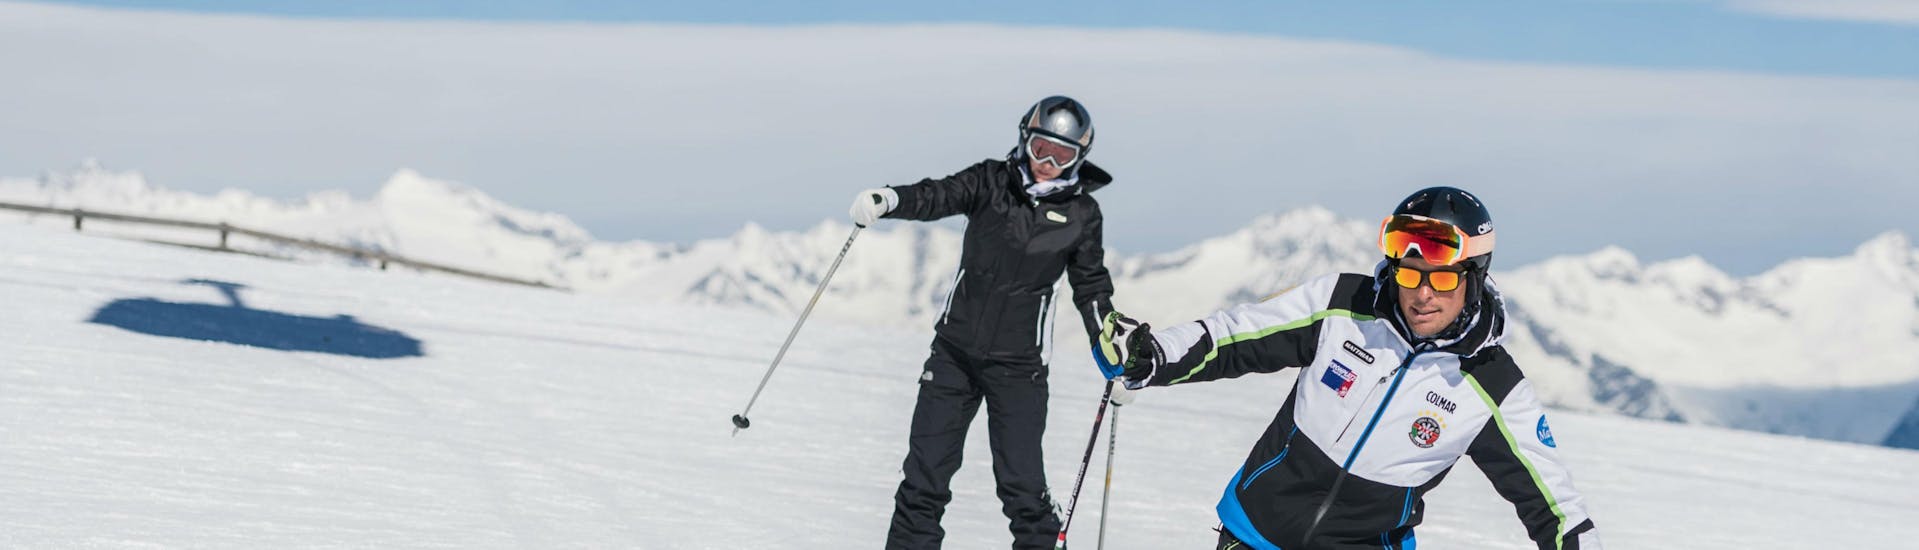 Cours de ski Adultes - Premier cours avec Cimaschool Plan de Corones  - Hero image